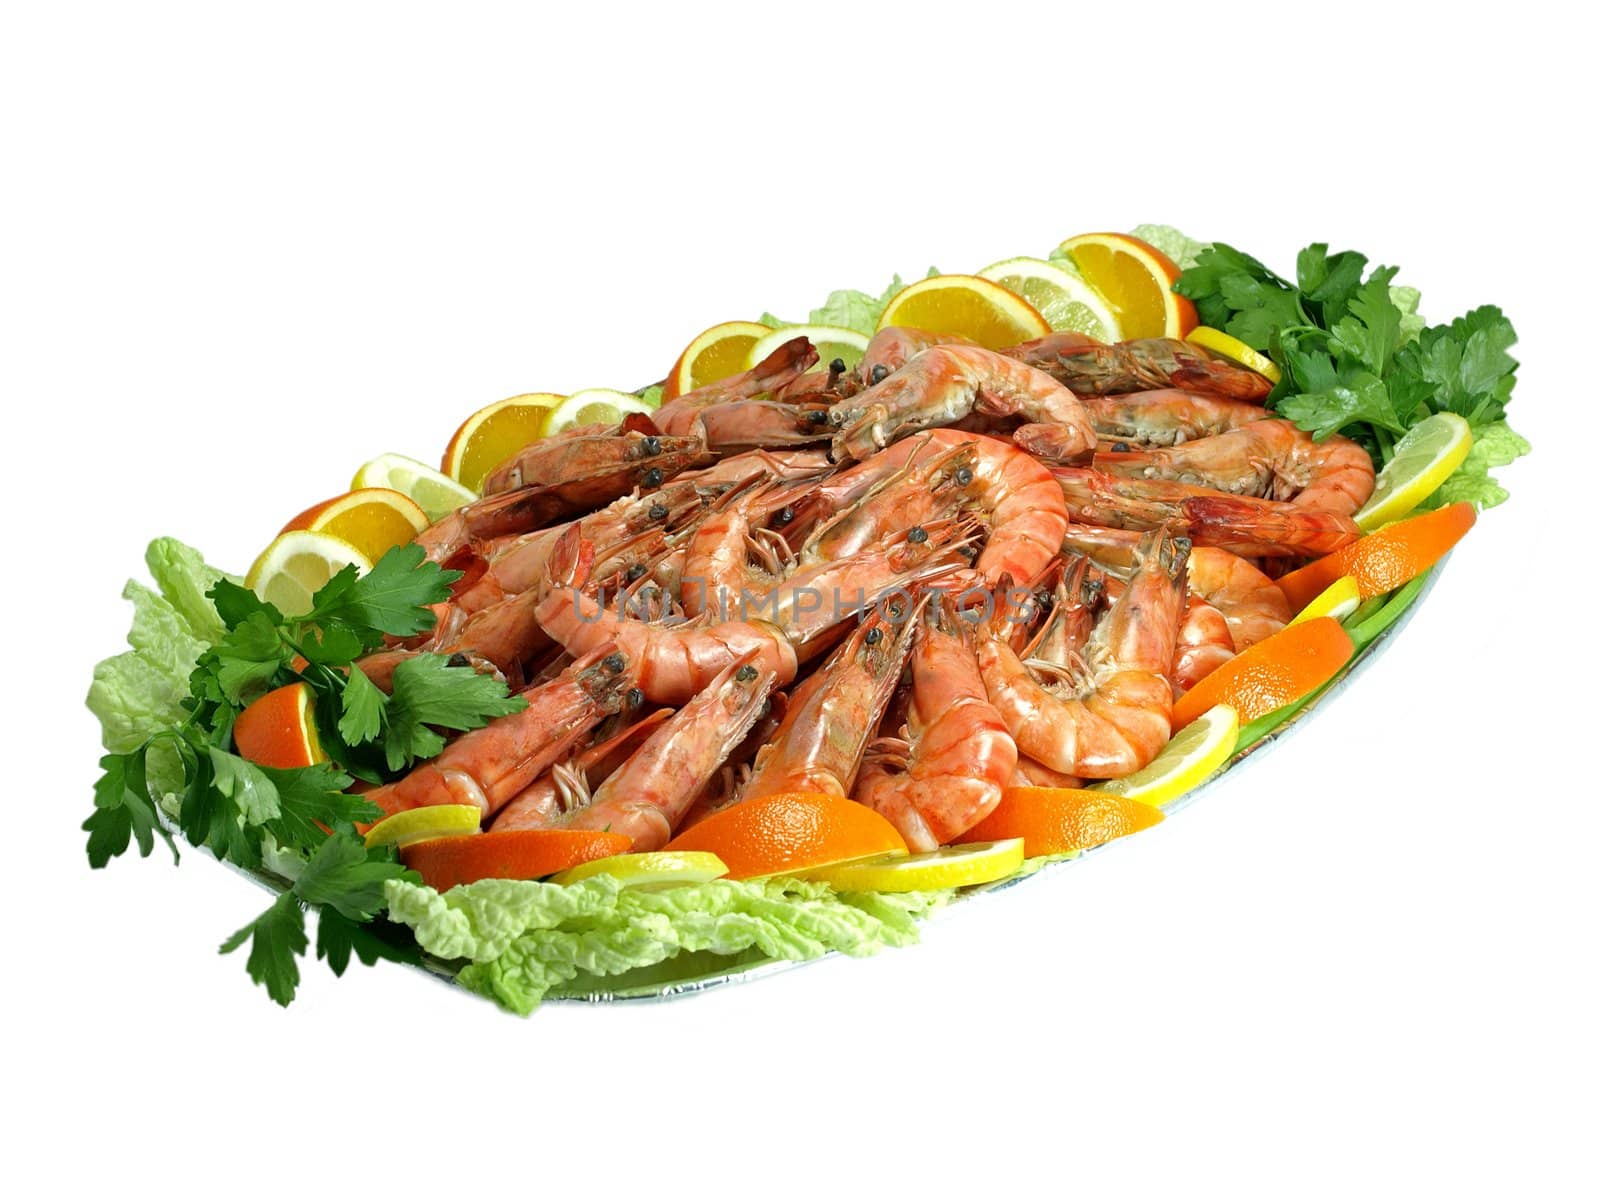 Freshly boiled shrimps garnished with slices of orange and lemon.